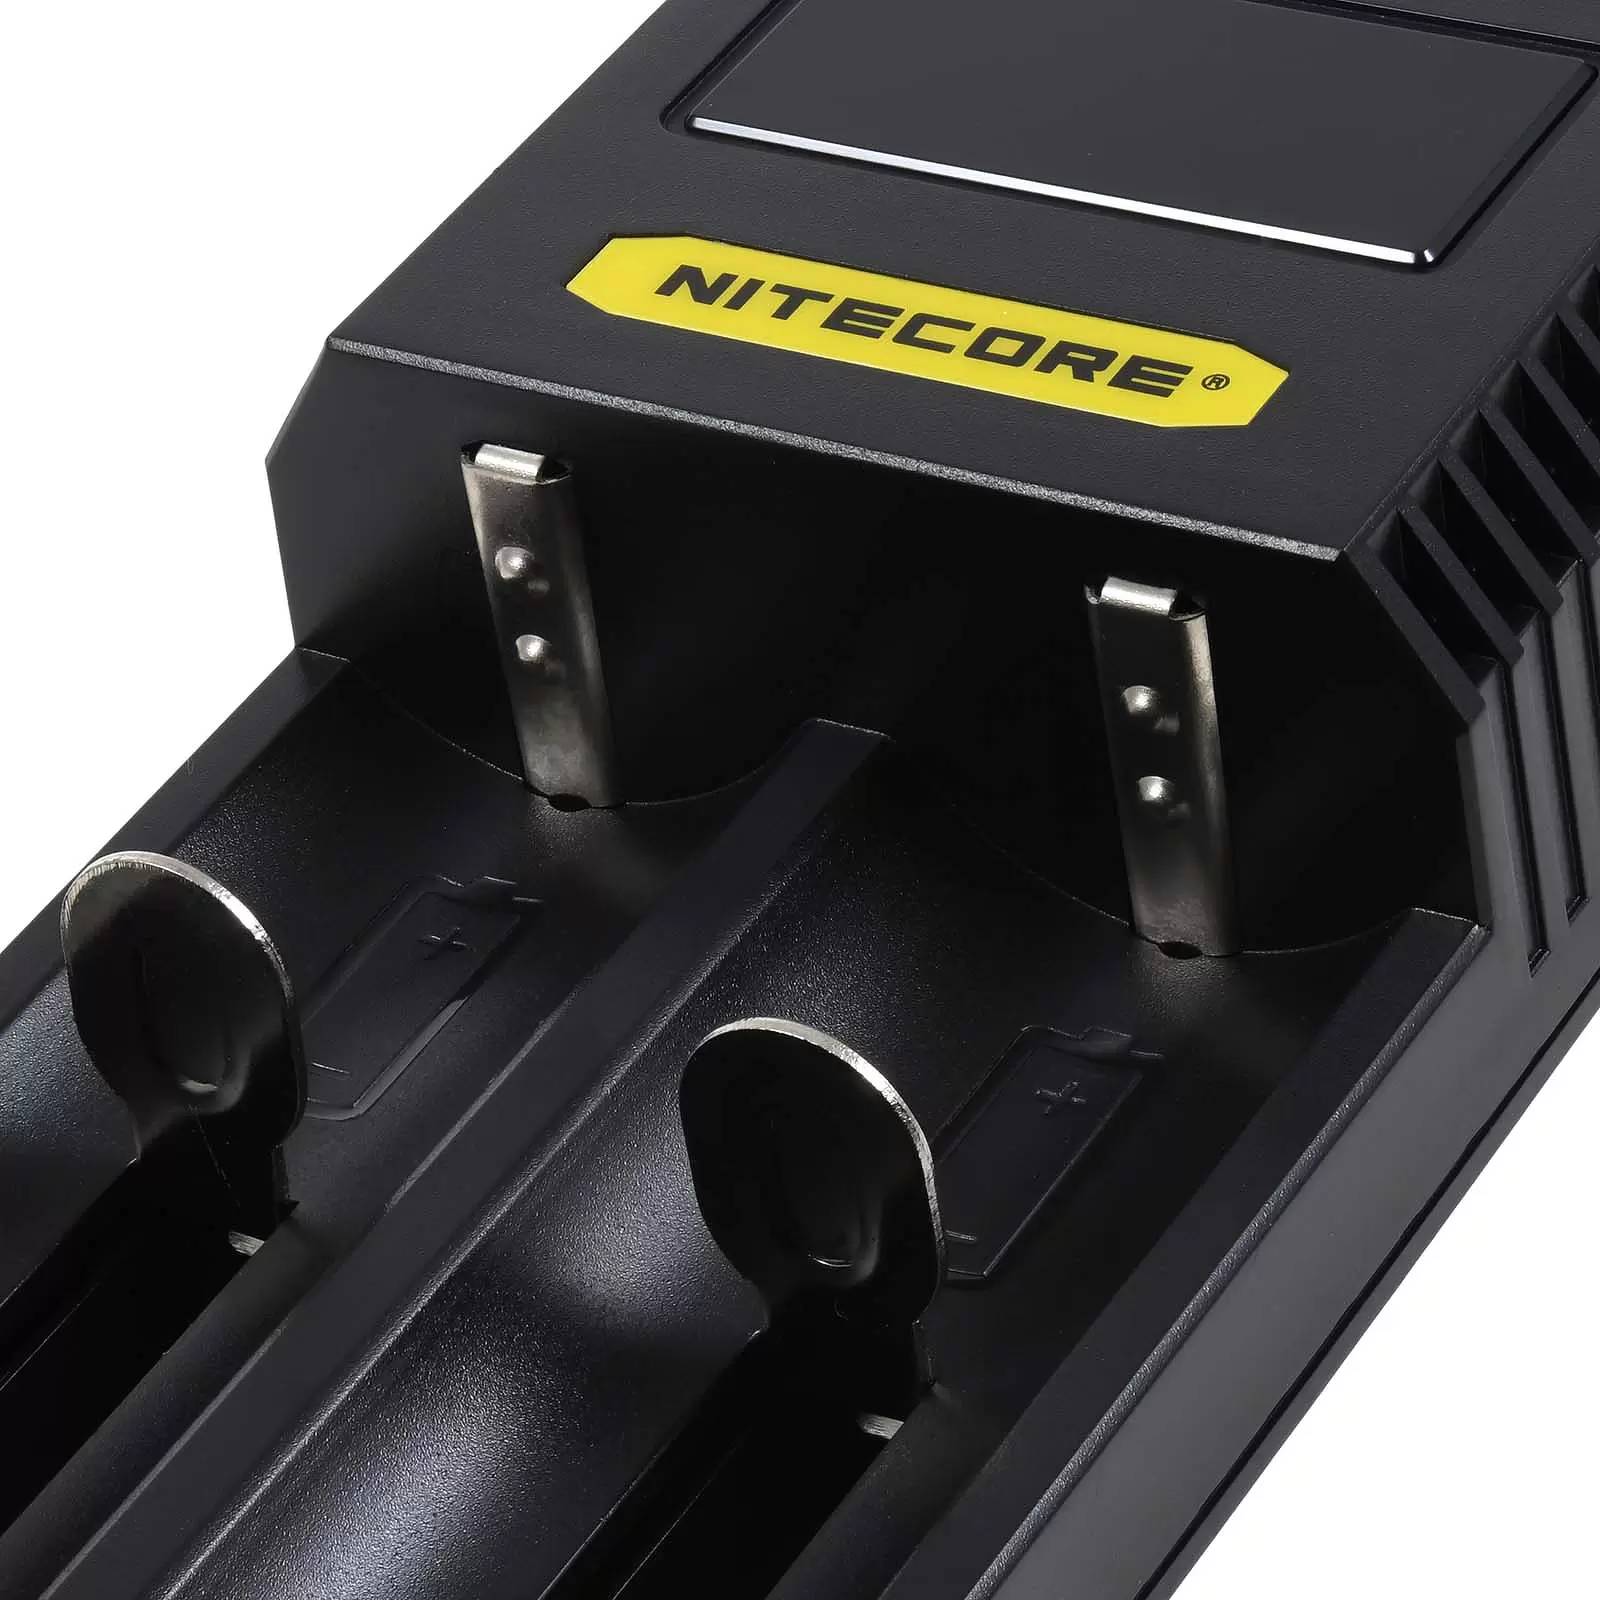 Nitecore USB-C CI2 Ladegerät mit 2 Ladeschächten für Li-Ion-, NiMH- und NiCd Akkus